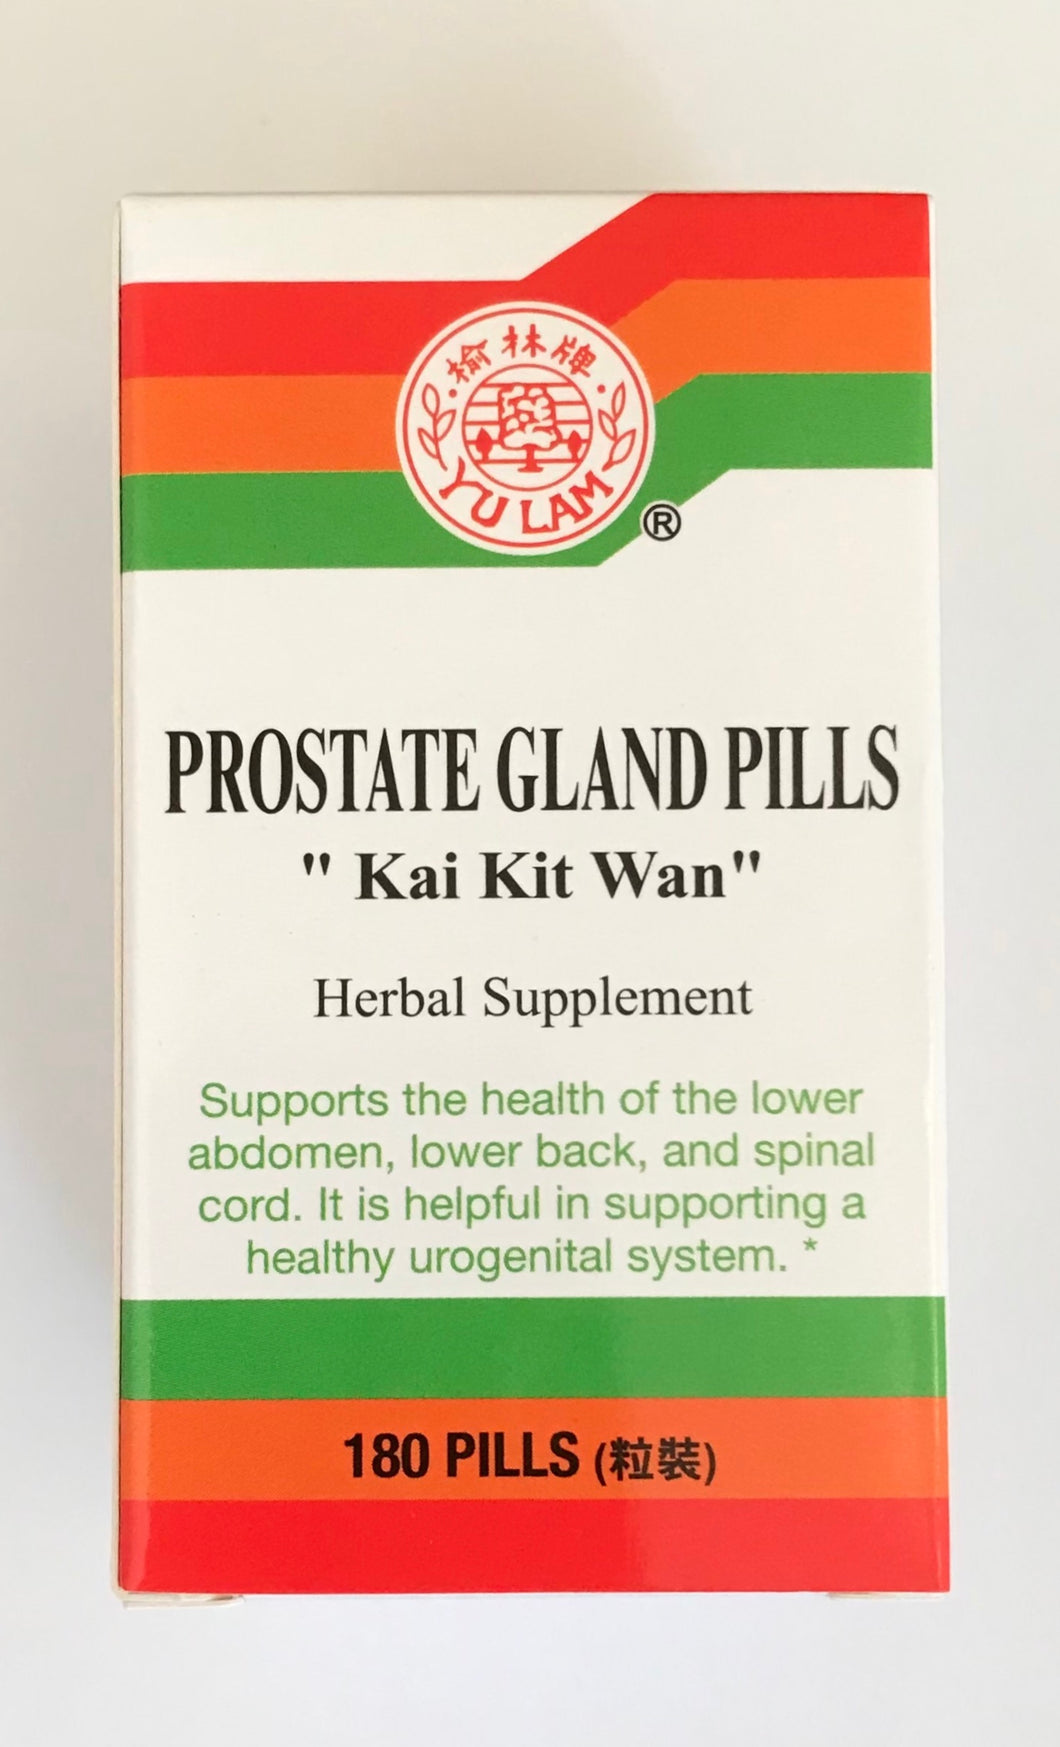 Kai Kit Wan (Prostate Gland Pills)